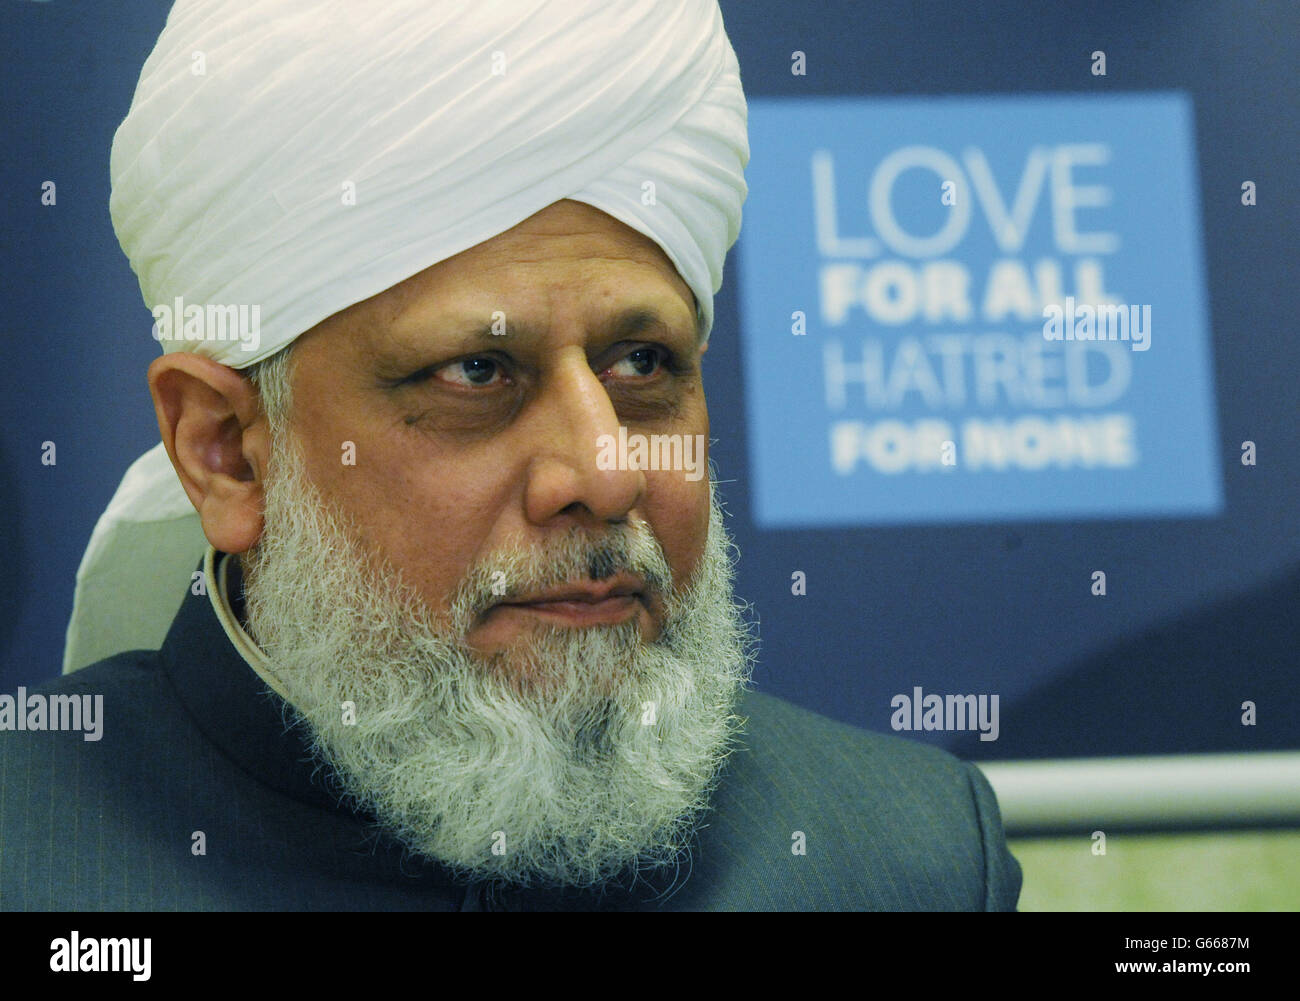 Líder mundial de la Comunidad Musulmana de Ahmadiyya, su Santidad, Hadhrat Mirza Masroor Ahmad habla hoy en la Cámara de los comunes en Londres antes de un almuerzo para conmemorar el centenario de la Comunidad Musulmana de Ahmadiyya. Foto de stock